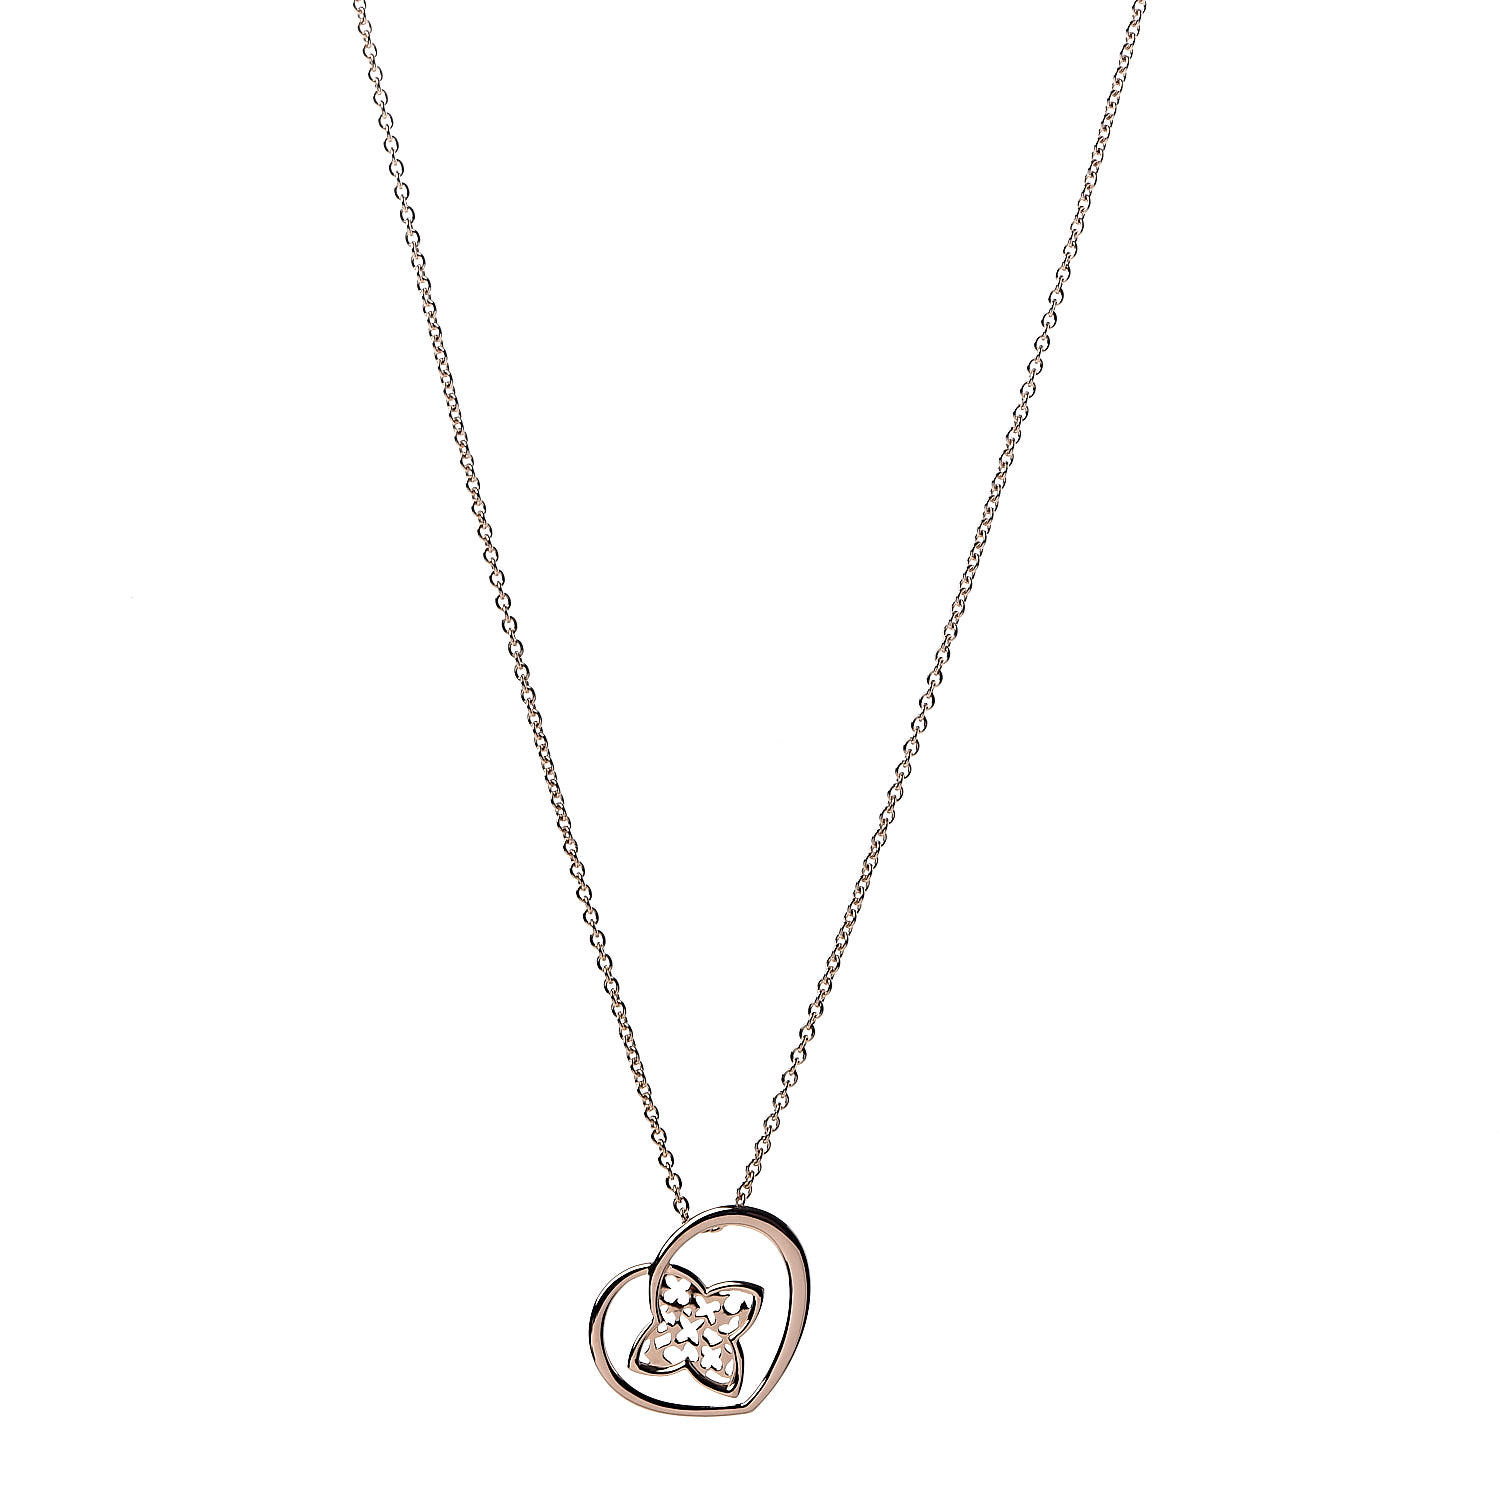 Louis Vuitton Pendant Chain Whistle Necklace, Women's Fashion